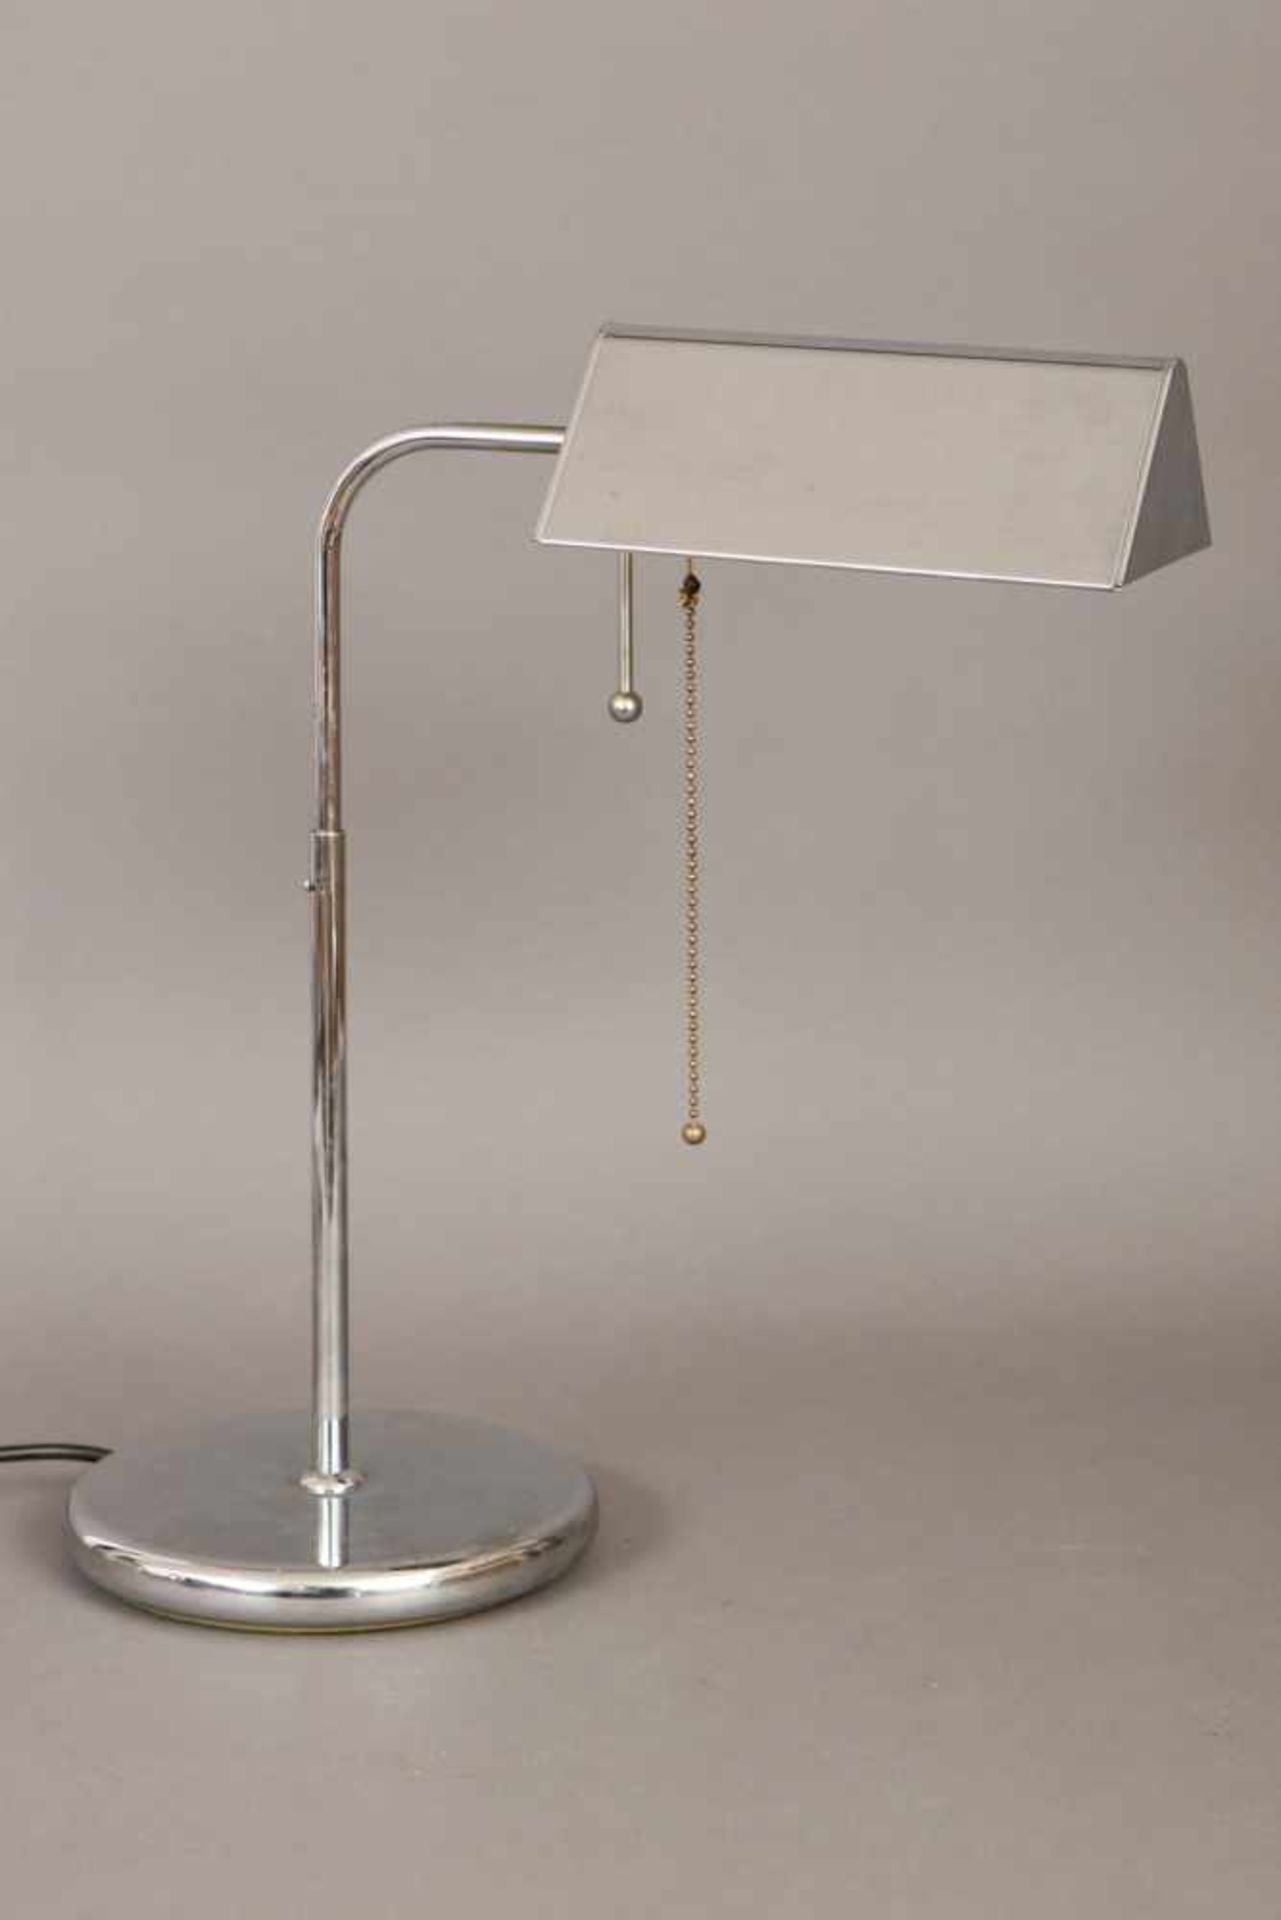 Tischlampeverchromtes Metall, 3-eckiger Schirm an schlankem, höhenverstellbarem Gestänge auf